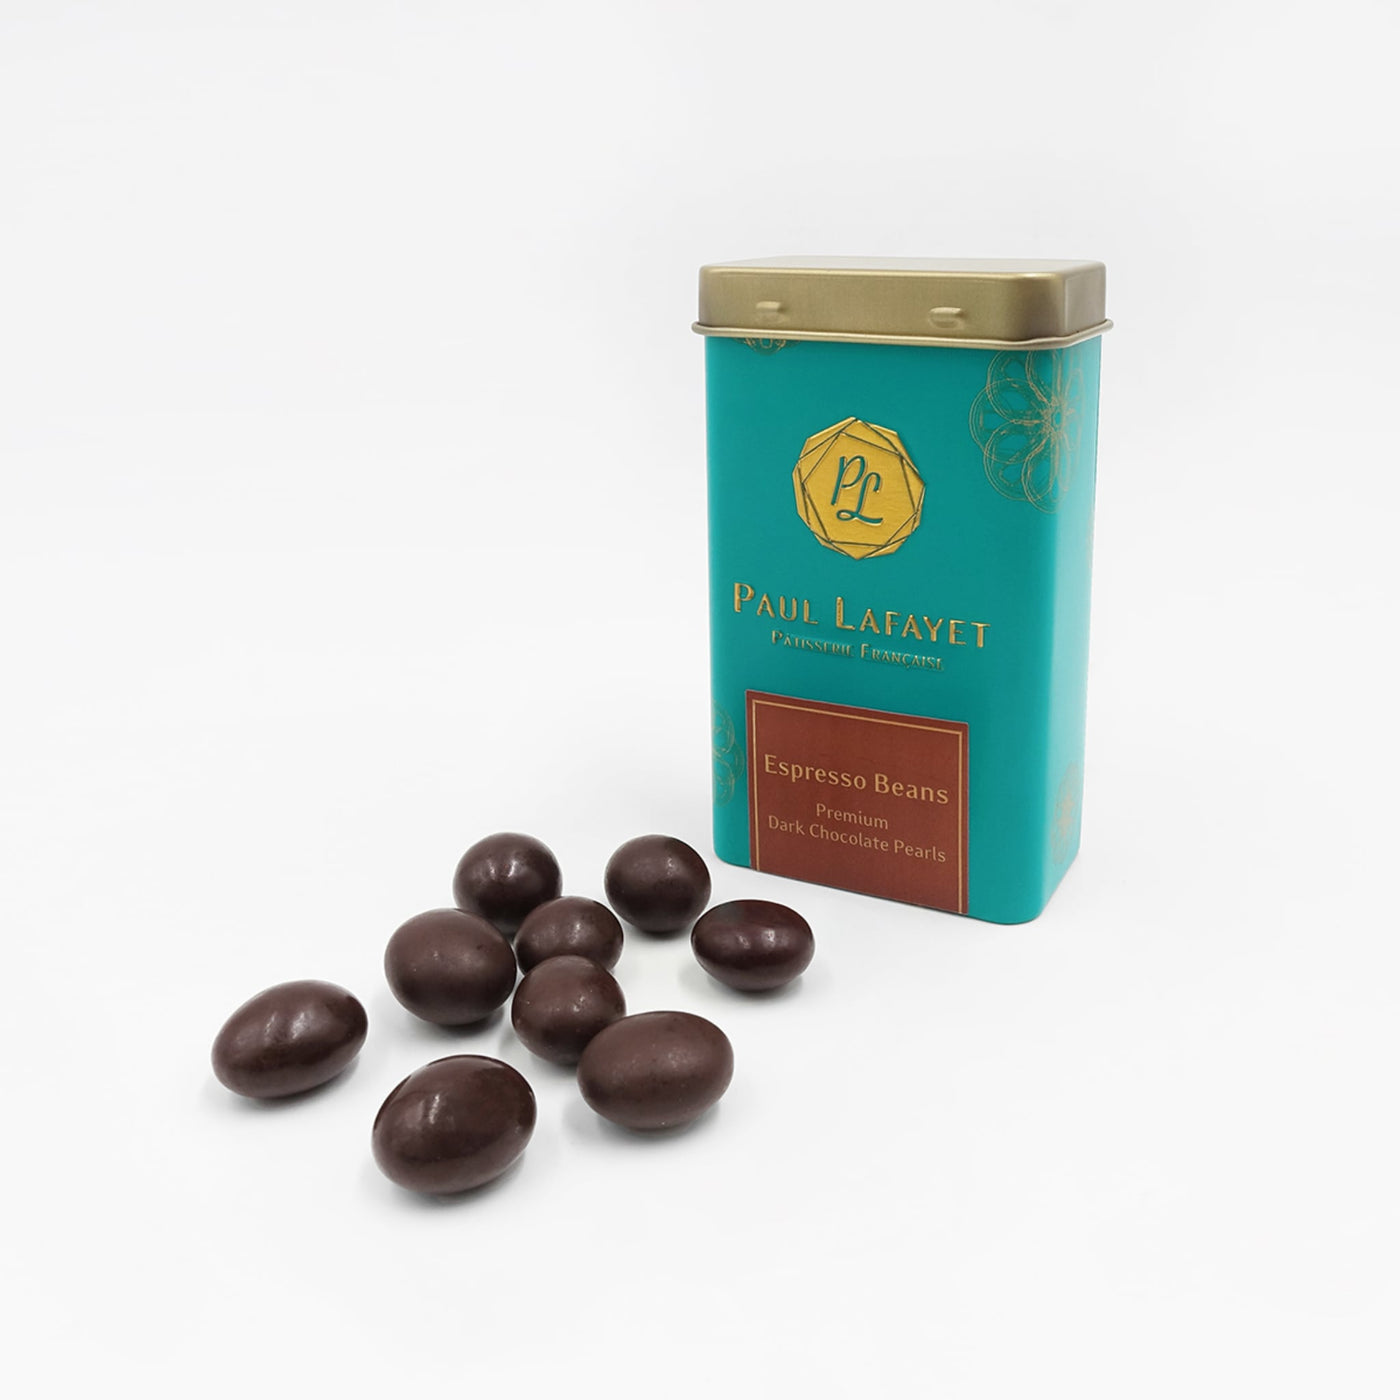 Premium Dark Chocolate Pearls - Espresso Beans